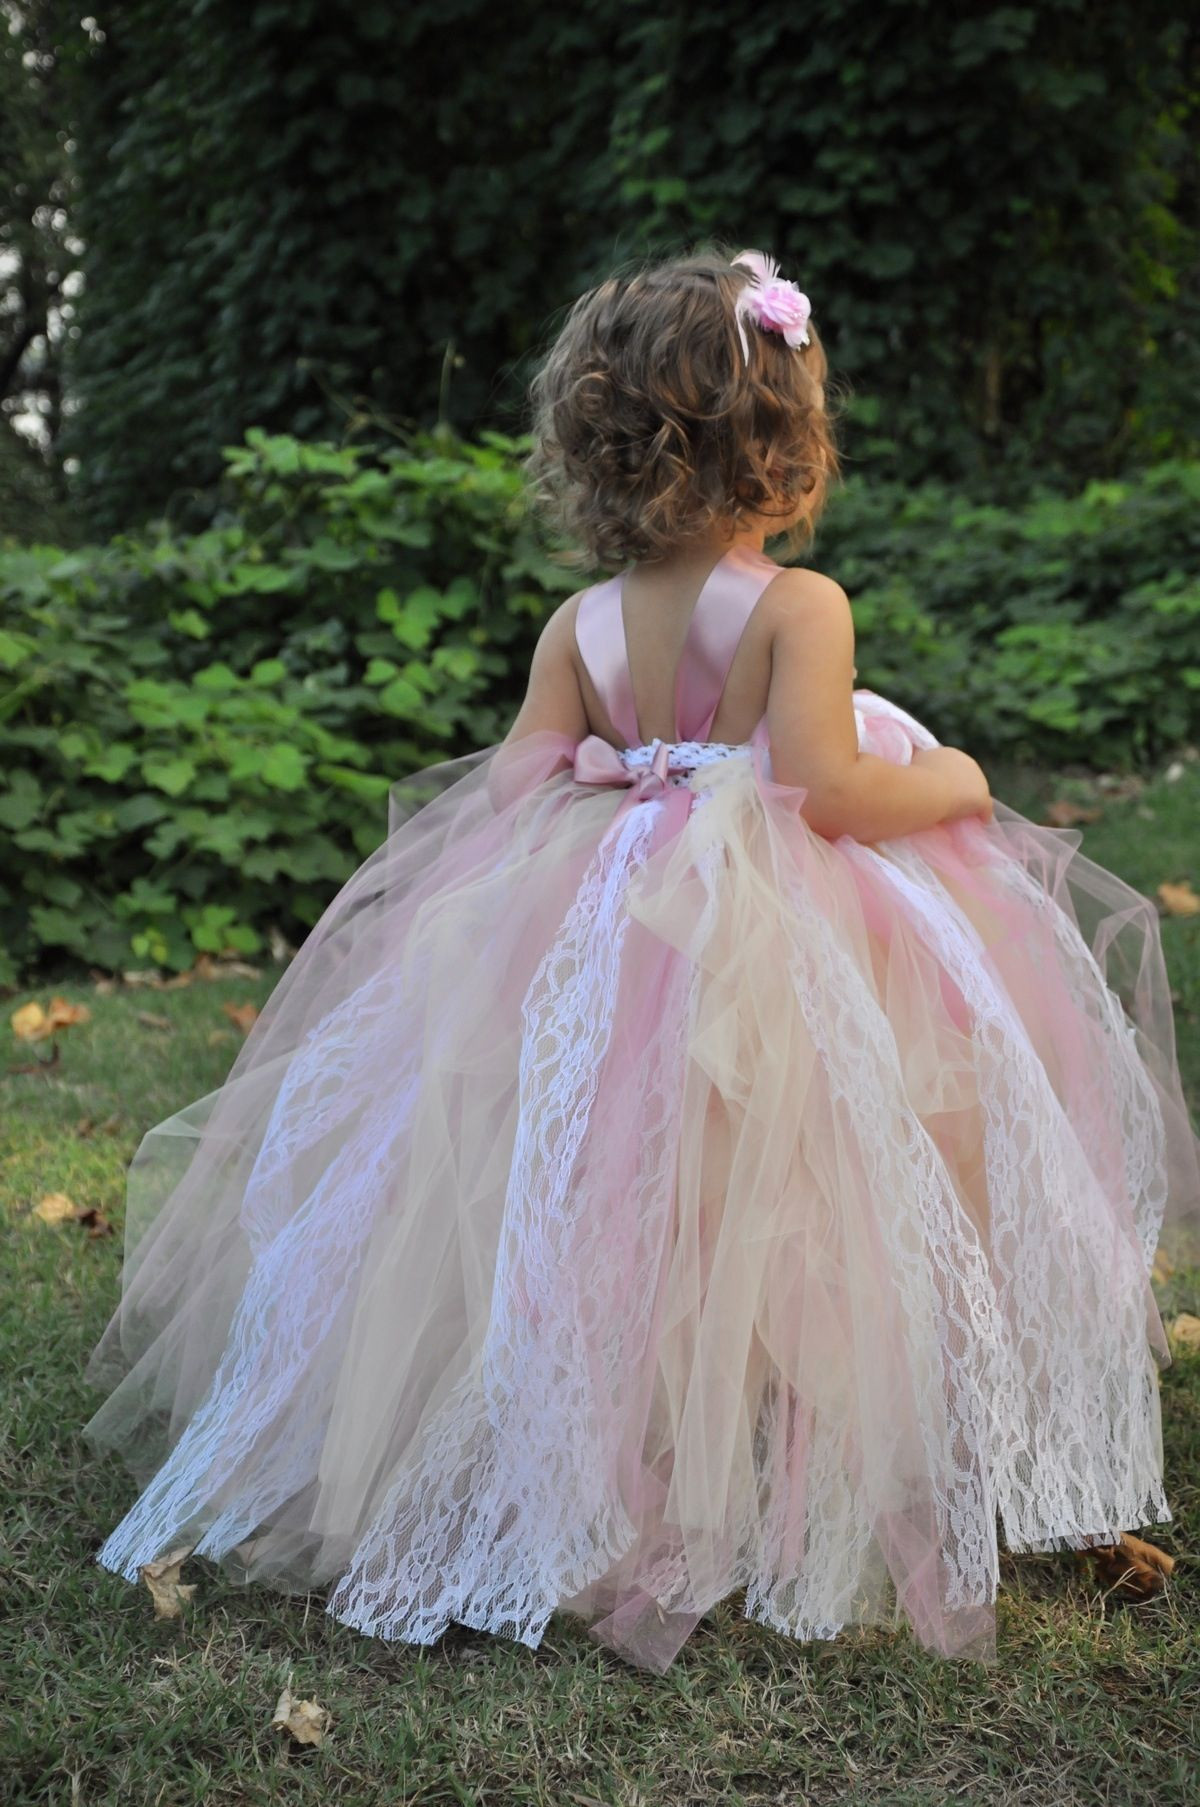 DIY Tutu Dress For Toddler
 Tutu dress DIY Fun